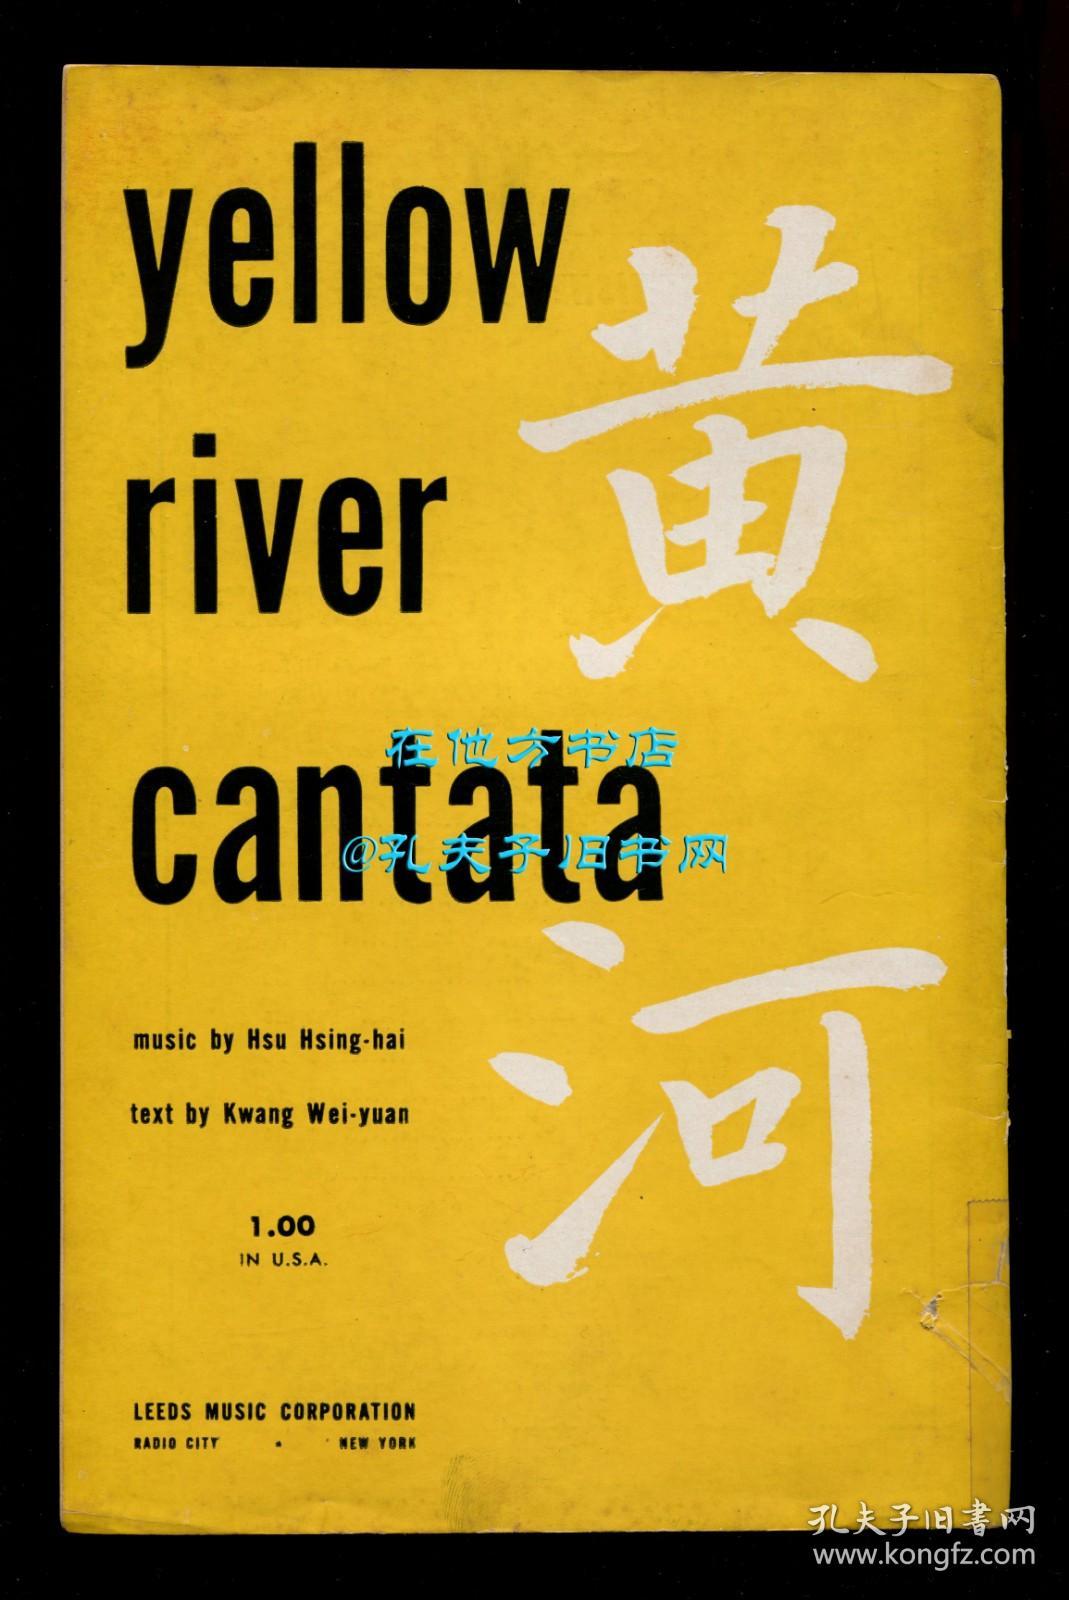 《黄河大合唱》（Yellow River Cantata），英文版，冼星海作曲，光未然作词，沃林福德·里格改编，1946年初版平装